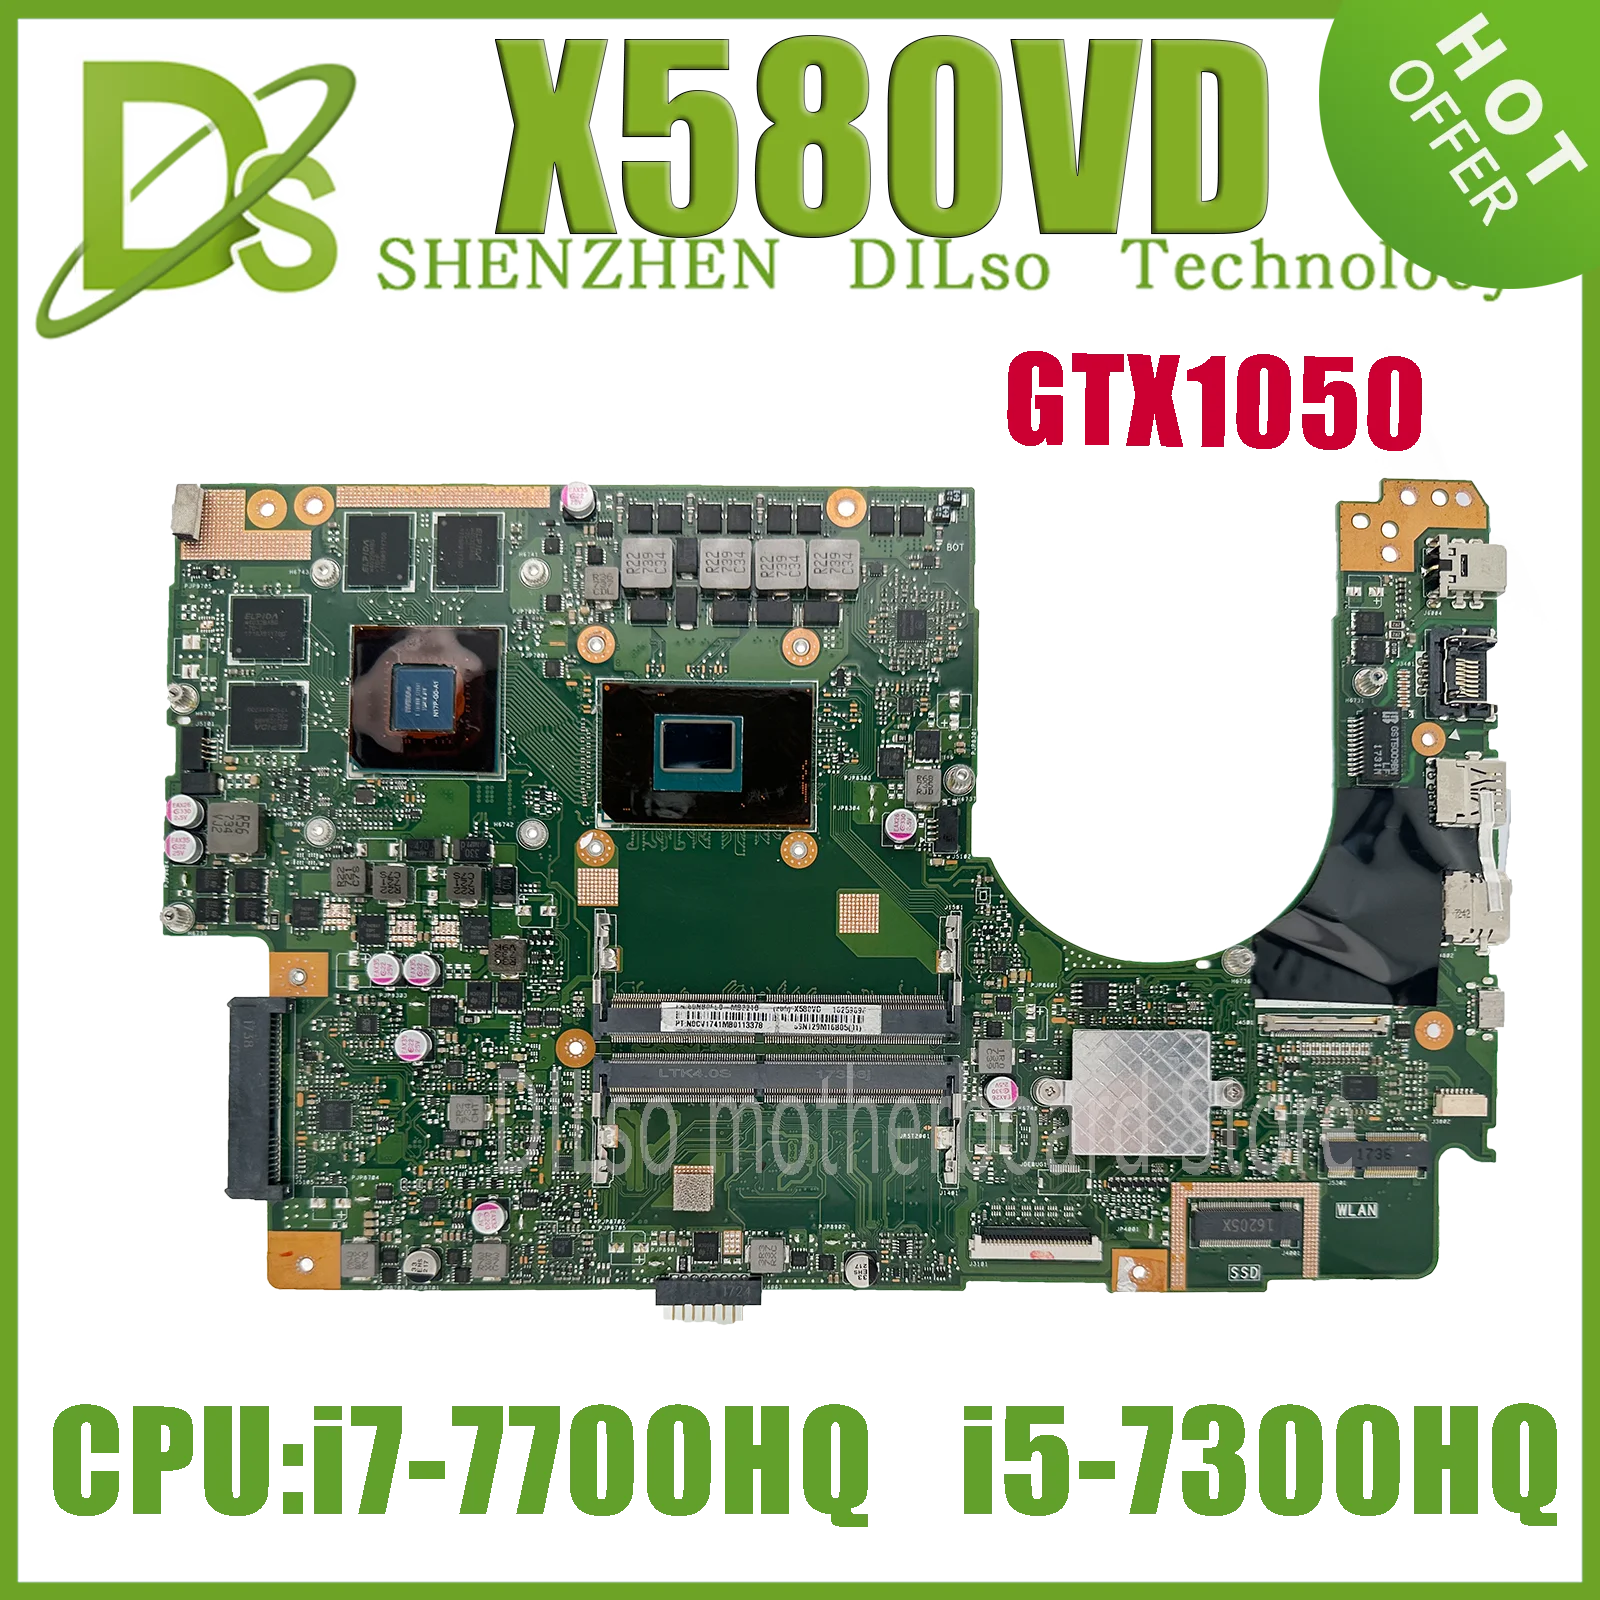 

X580VN X580VD Mainboard For ASUS X580 X580V X580VD N580VD Laptop Motherboard I7-7700HQ I5-7300HQ GTX1050 MX150 2G/4GB-GPU DDR4